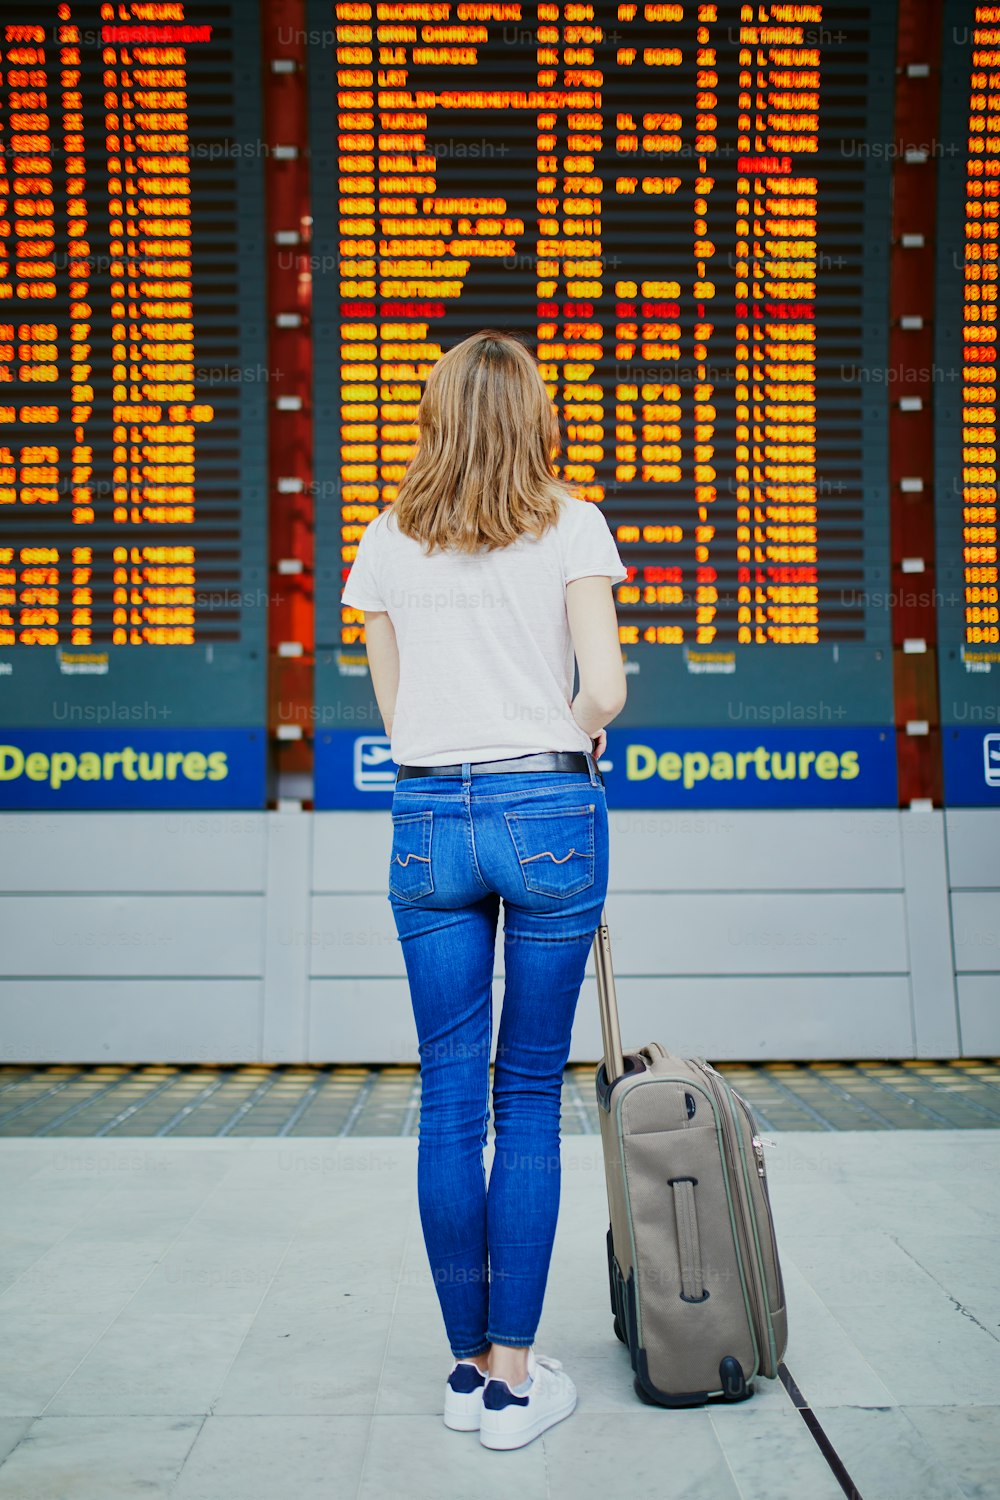 フライト情報表示の近くに荷物を持つ国際空港の若い女性